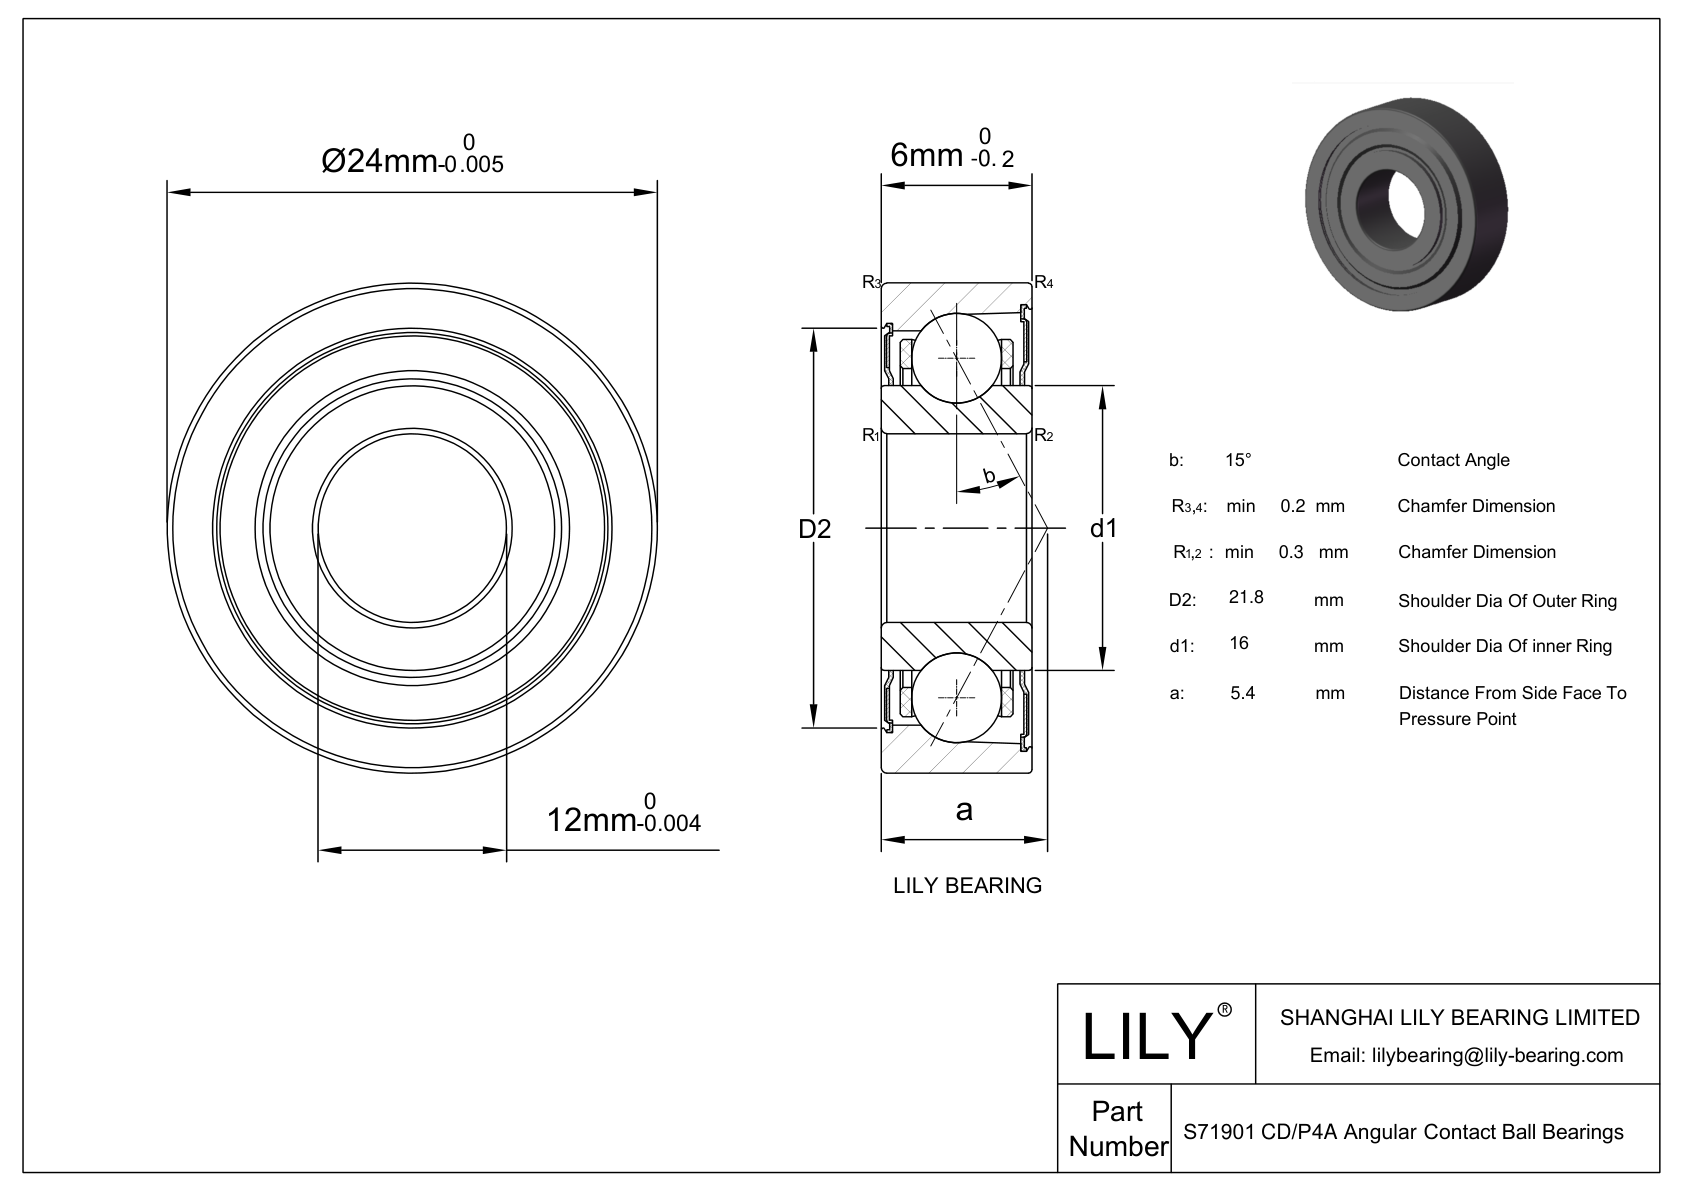 S71901 CD/P4A Super Precision Angular Contact Ball Bearings cad drawing